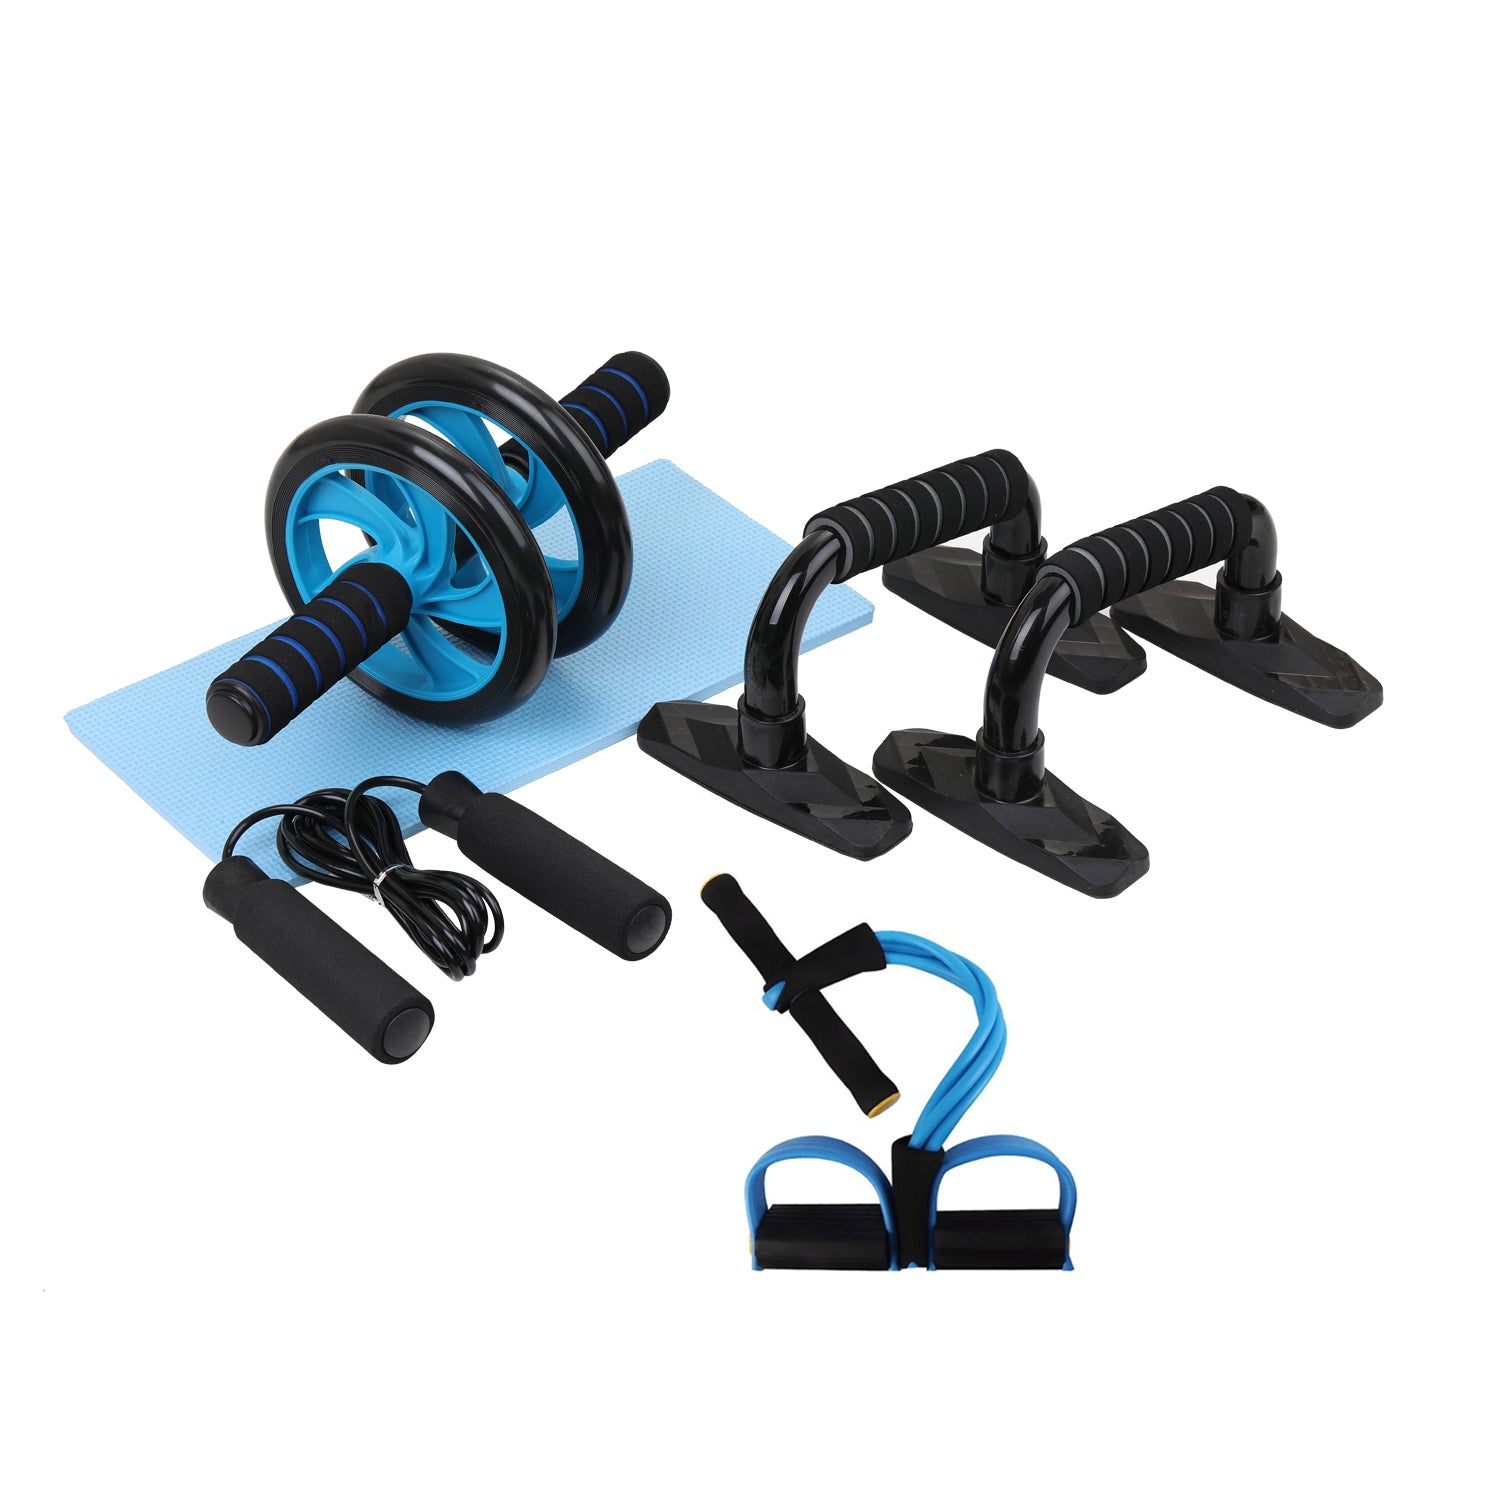 Gym Fitness Equipment - Everyday-Sales.com